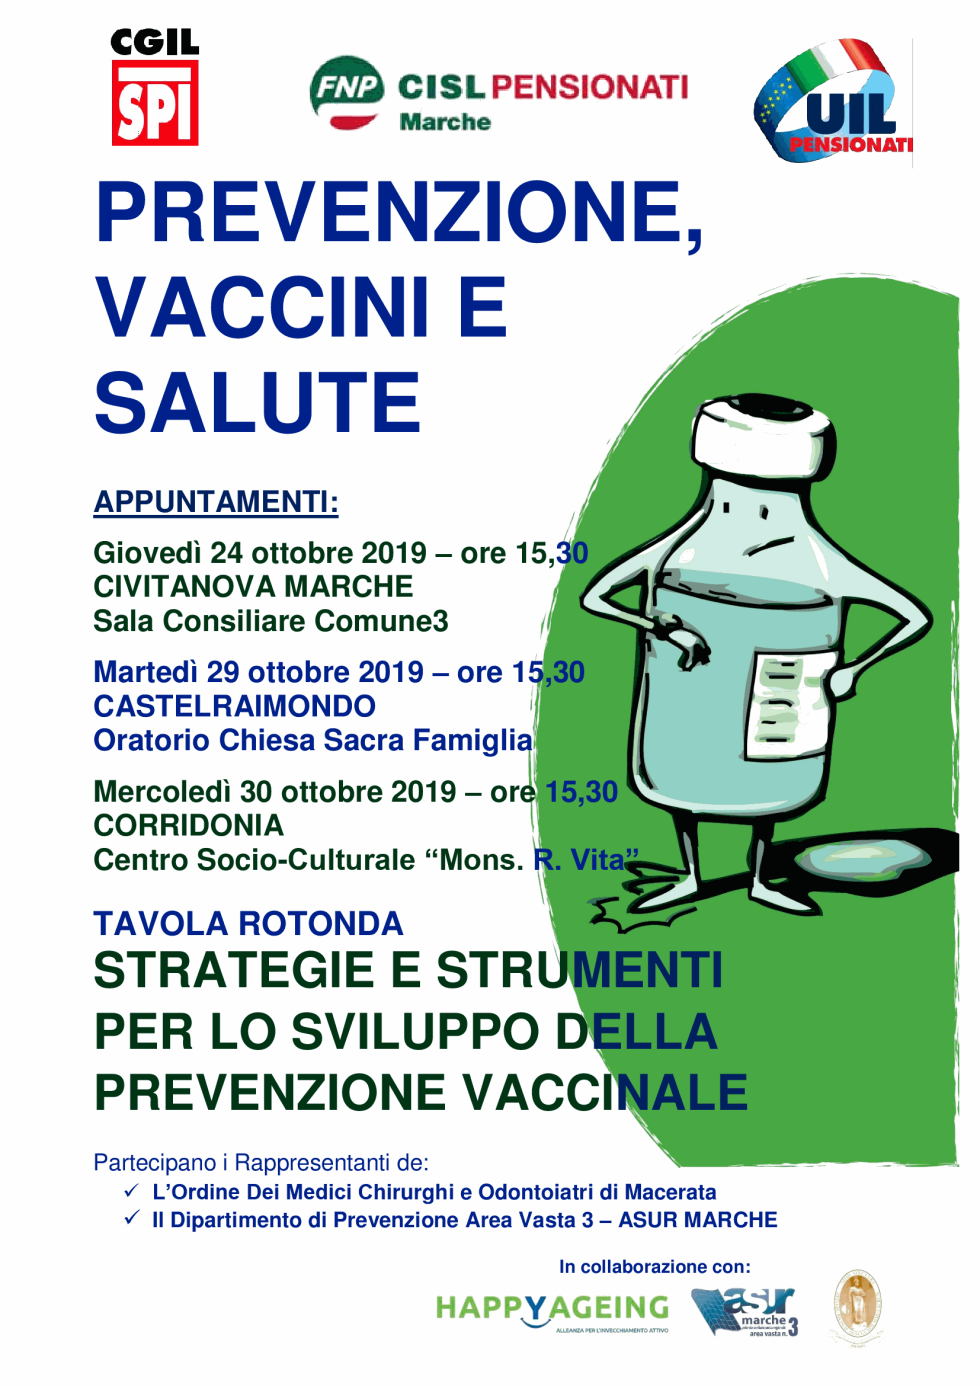 Prevenzione, vaccini e salute: partita la campagna di sensibilizzazione nella provincia di Macerata